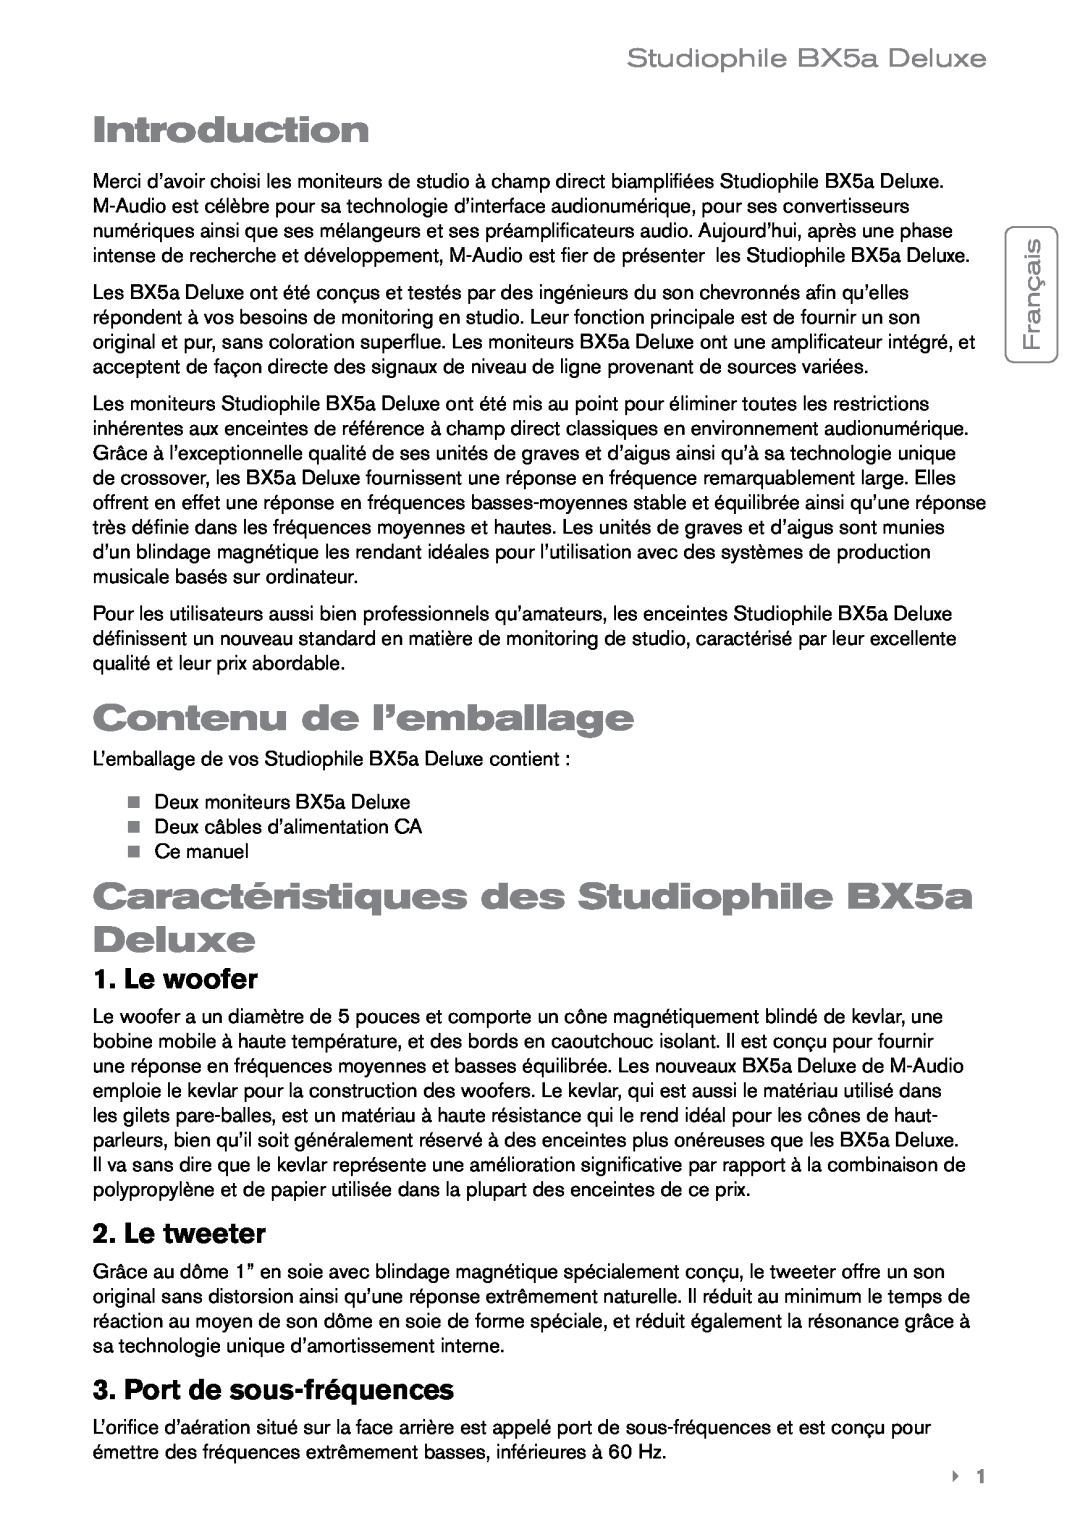 M-Audio manual Introduction, Contenu de l’emballage, Caractéristiques des Studiophile BX5a Deluxe, Le woofer, Le tweeter 